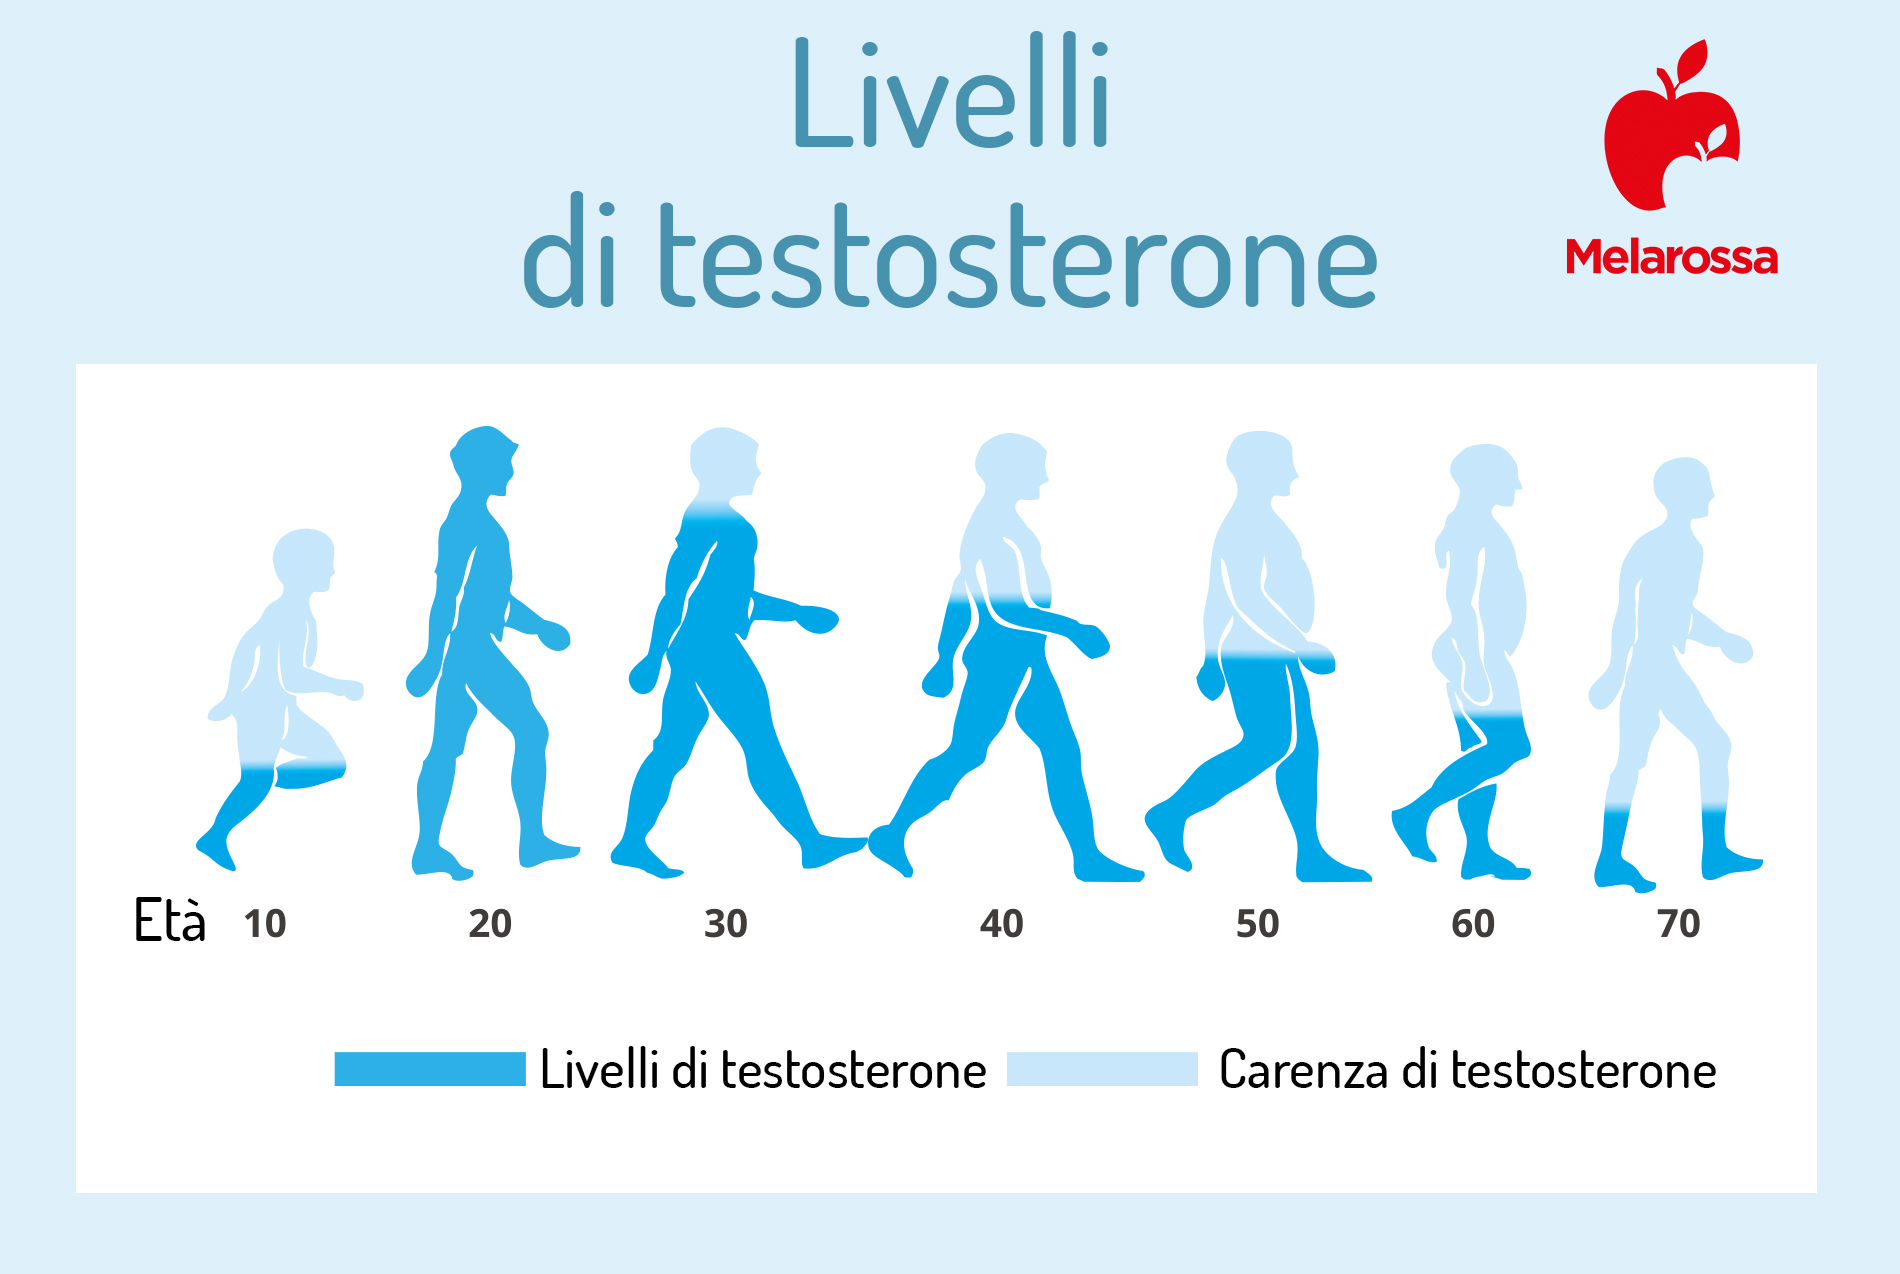 livelli di testosterone nella vita 